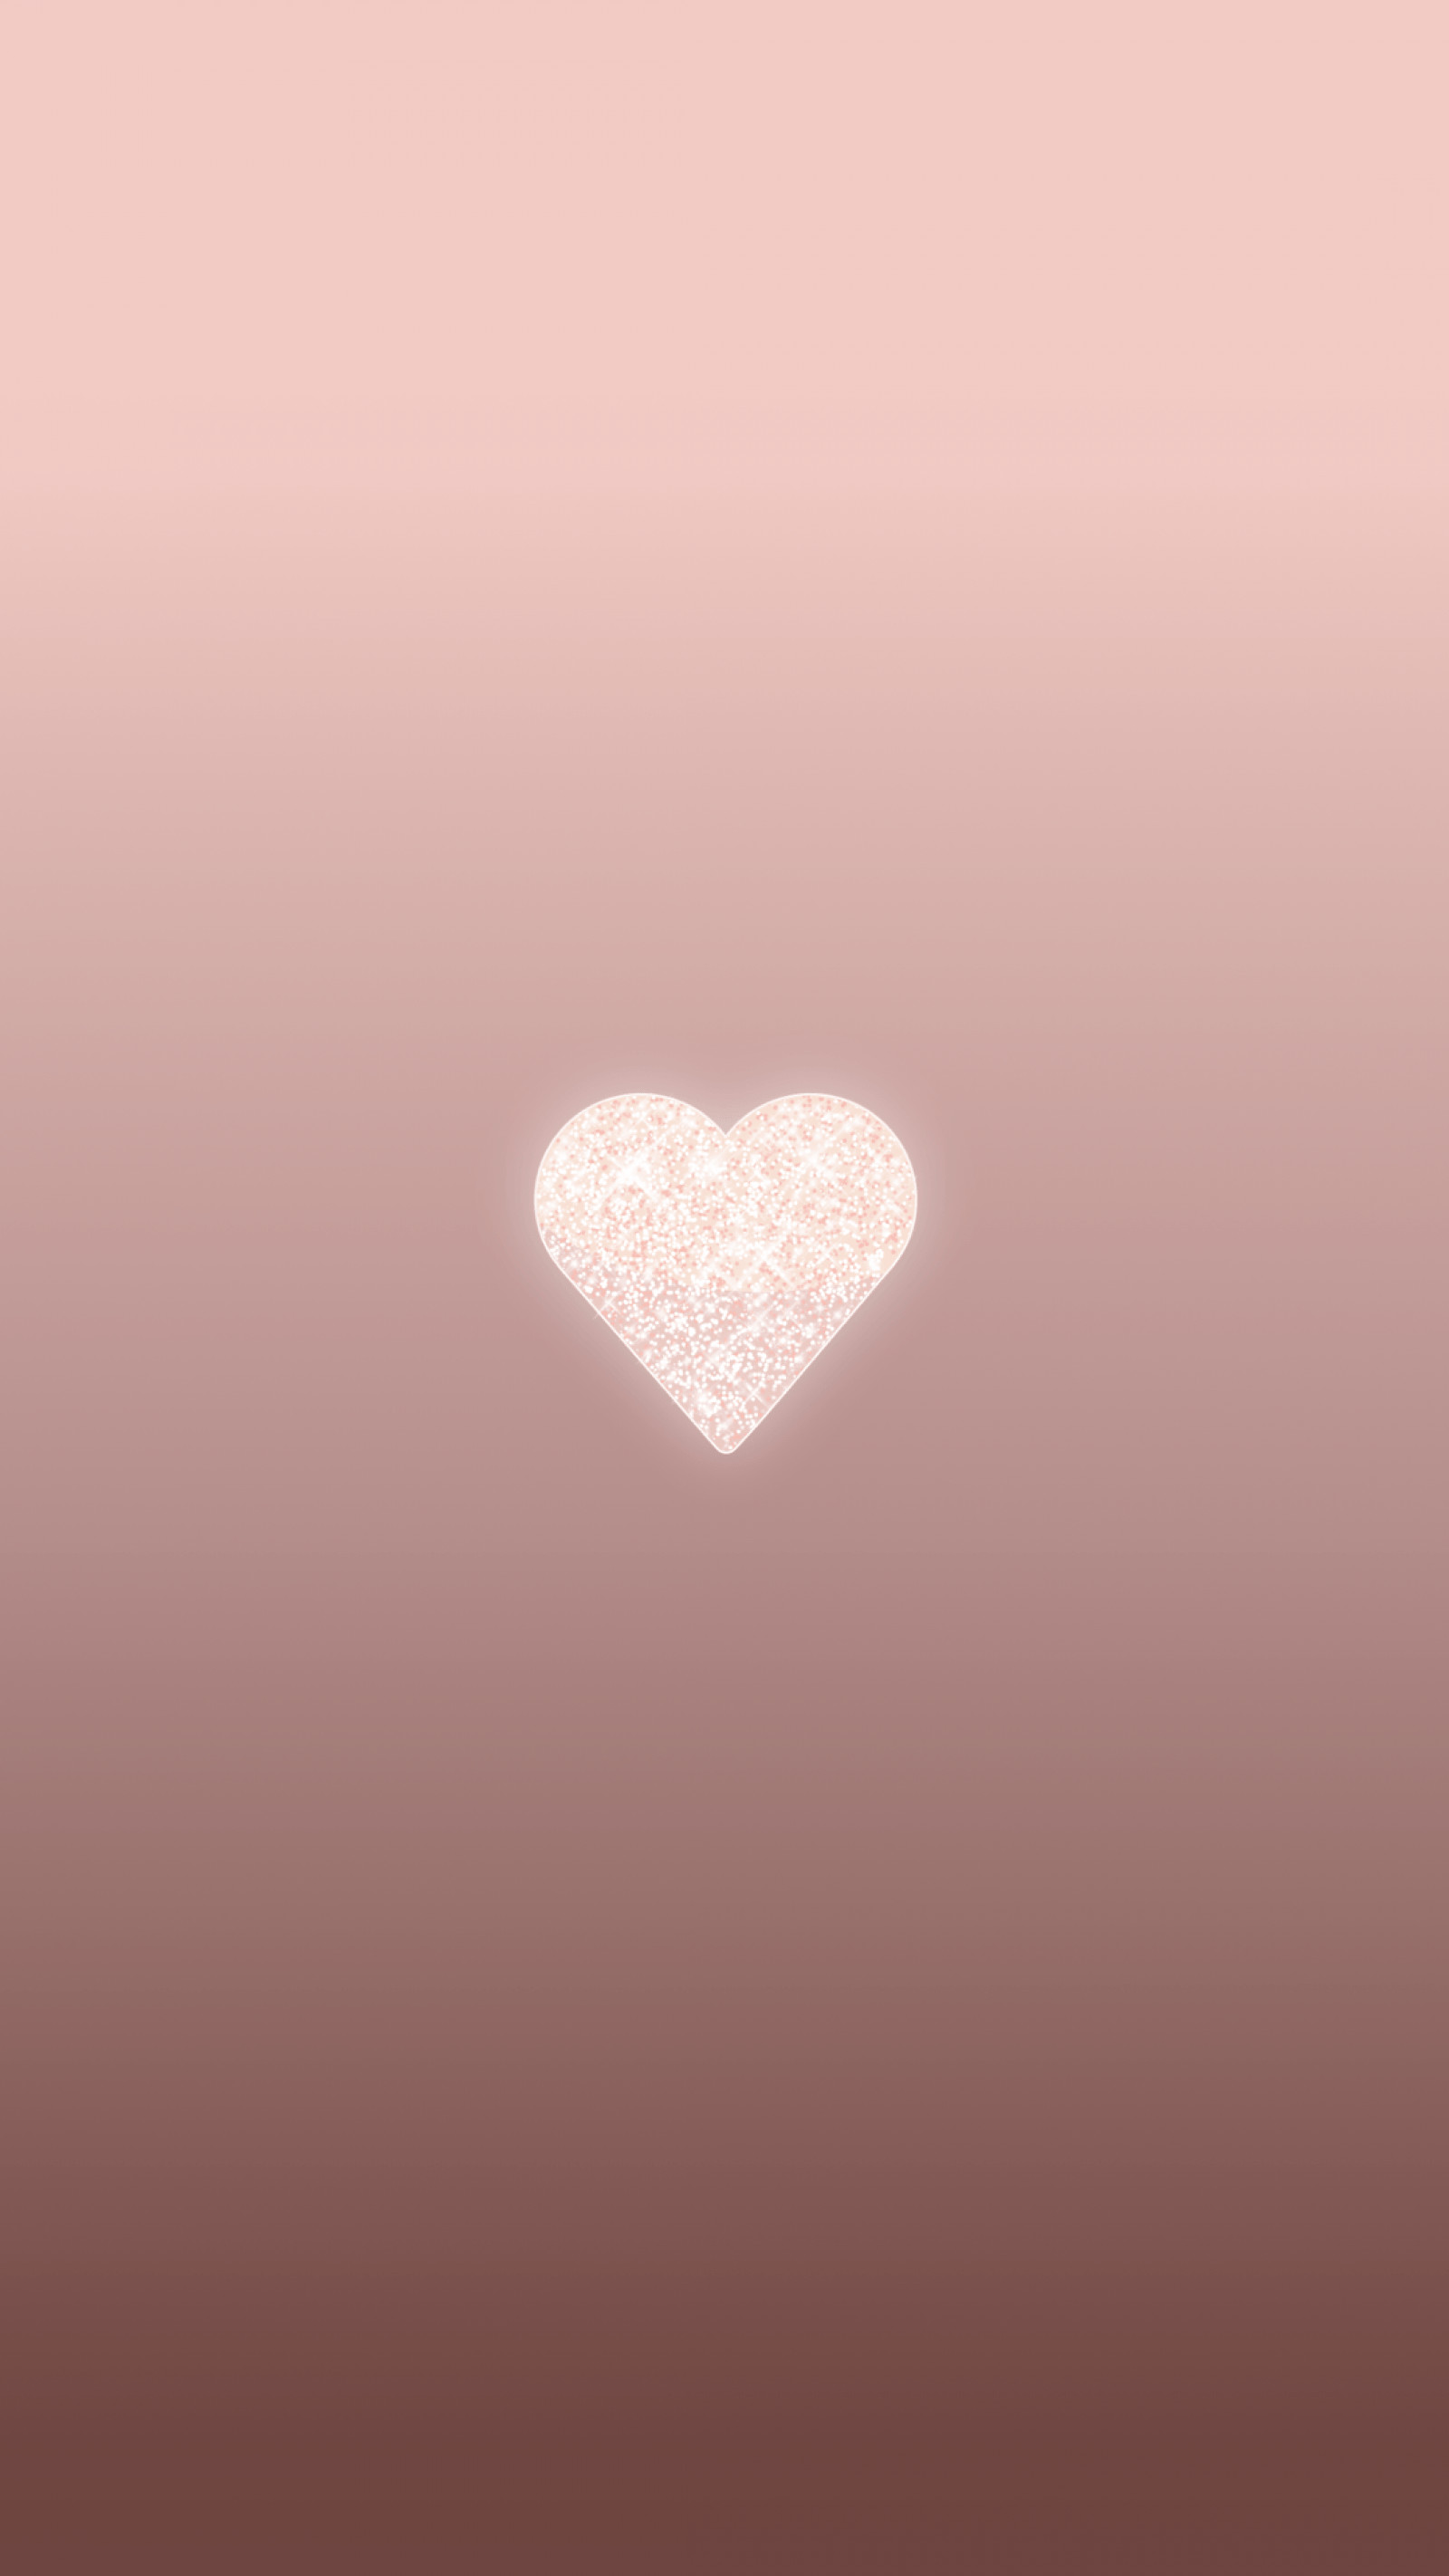 1600x2844 736x1306 à¸à¸¥à¸à¸²à¸£à¸à¹à¸à¸«à¸²à¸£à¸¹à¸à¸ à¸²à¸à¸ªà¸³à¸«à¸£à¸±à¸ heart wallpaper tumblr iphone | Random ...">